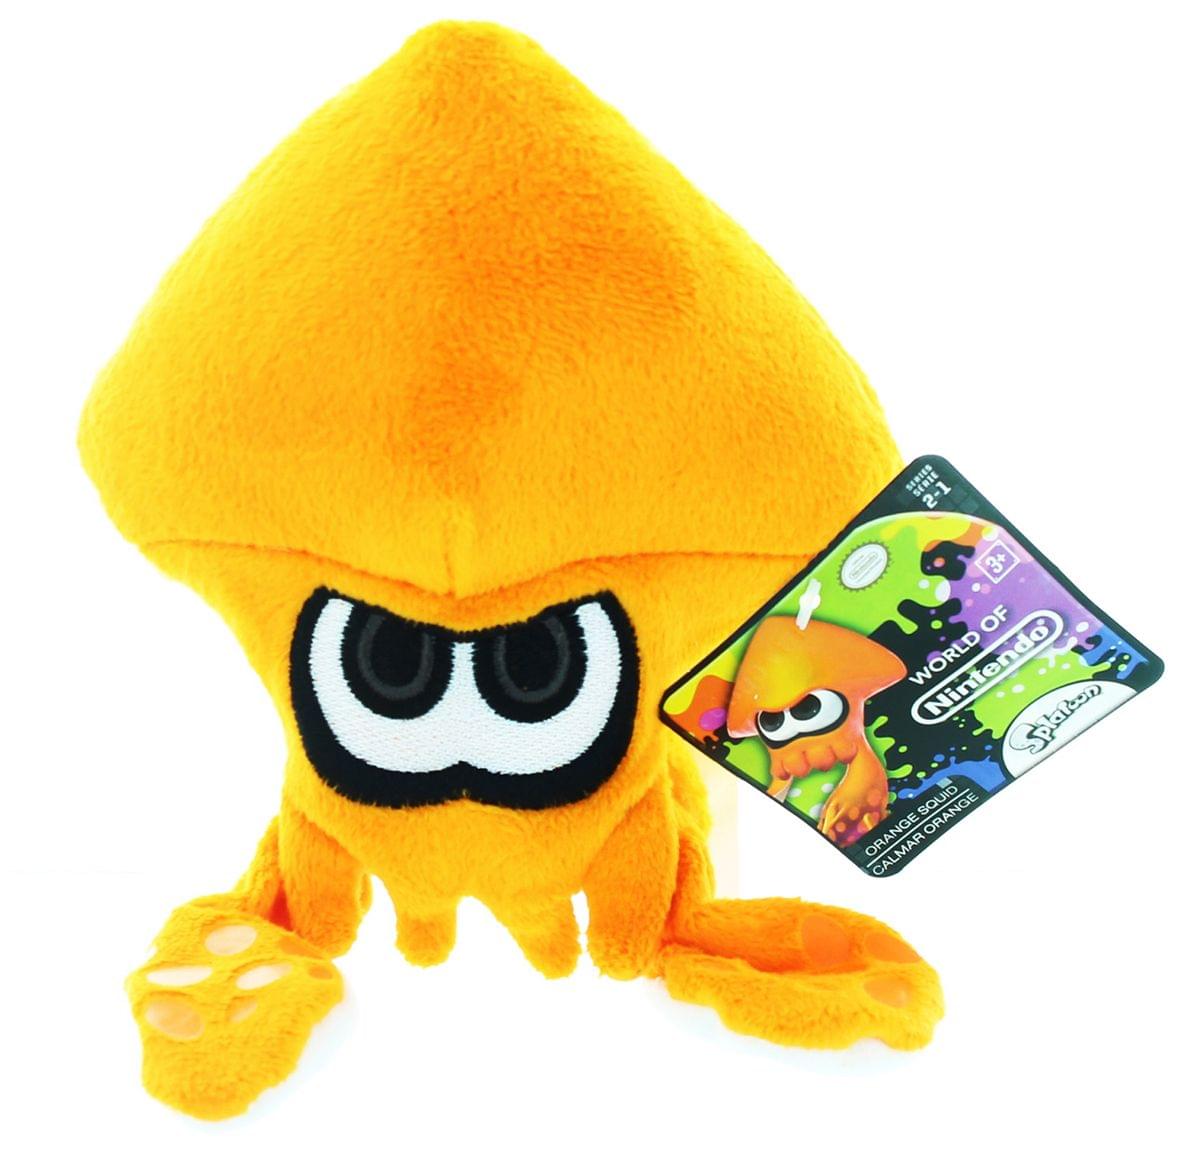 World of Nintendo 7.5" Plush: Orange Squid